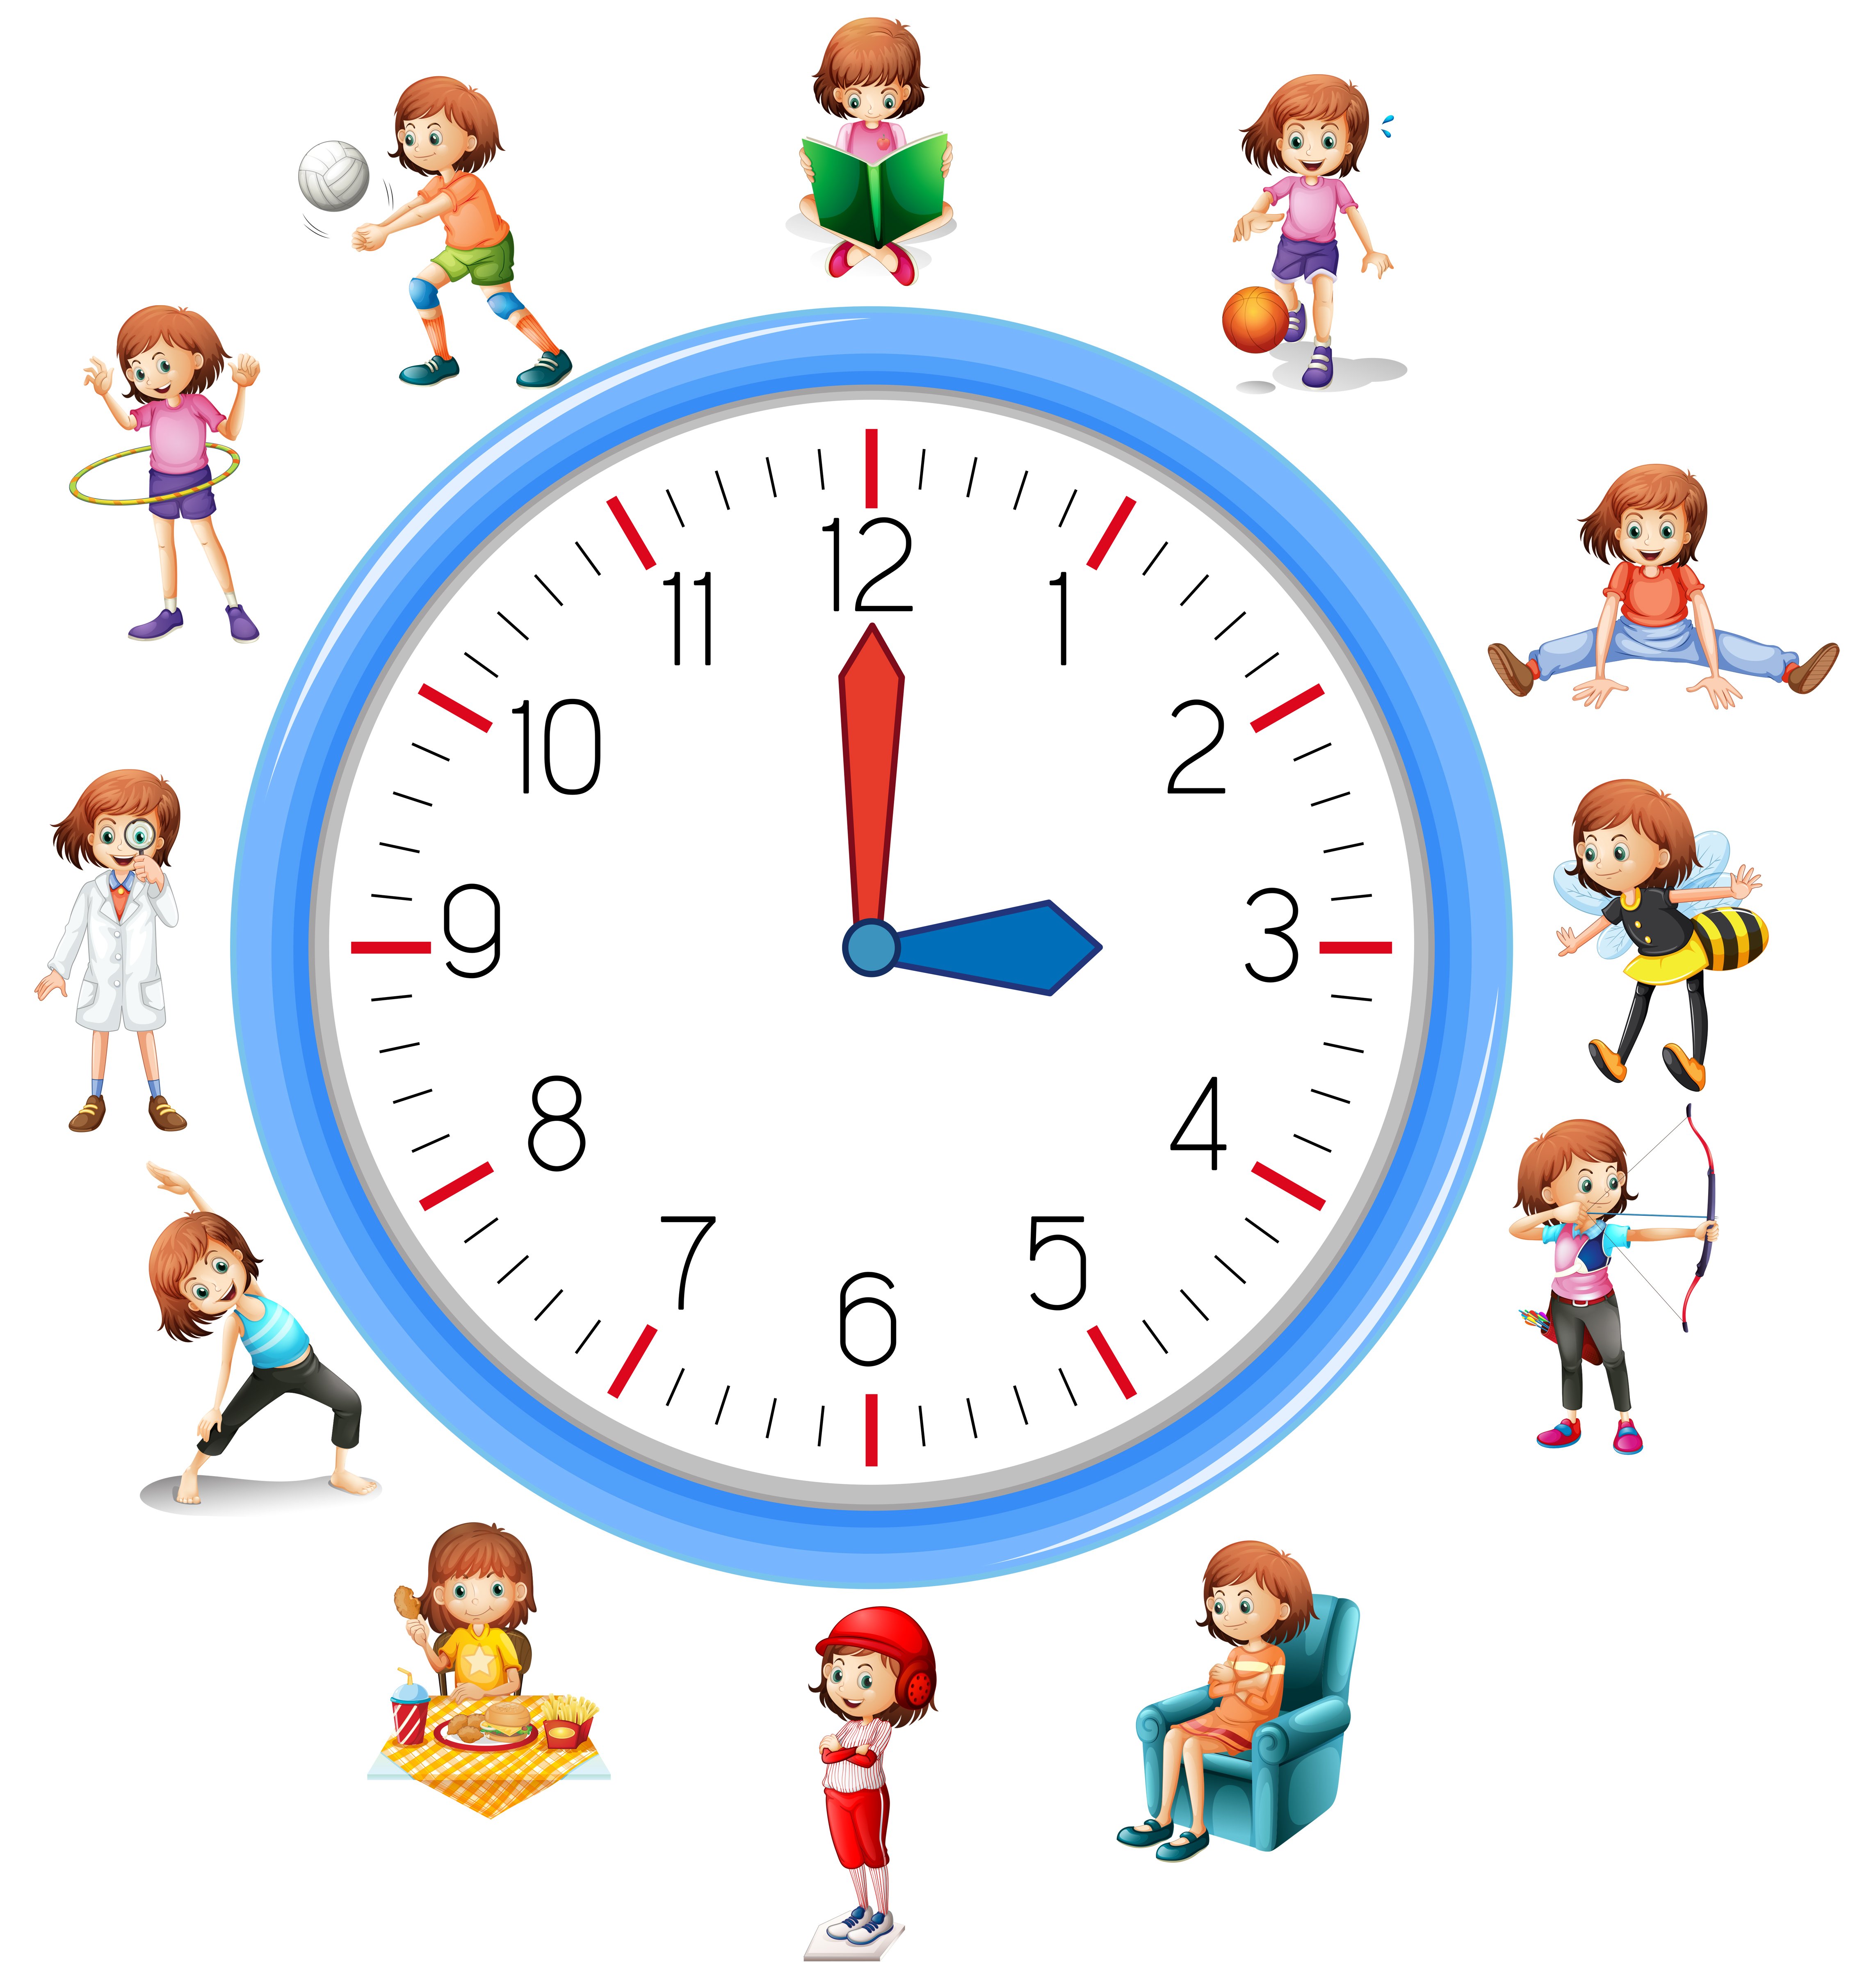 Часы фон для ребенка. Часы режим дня для дошкольников. Часы с режимом дня для дошкольников. Часы с режимом дня для школьника. Часы для распорядка дня школьников.